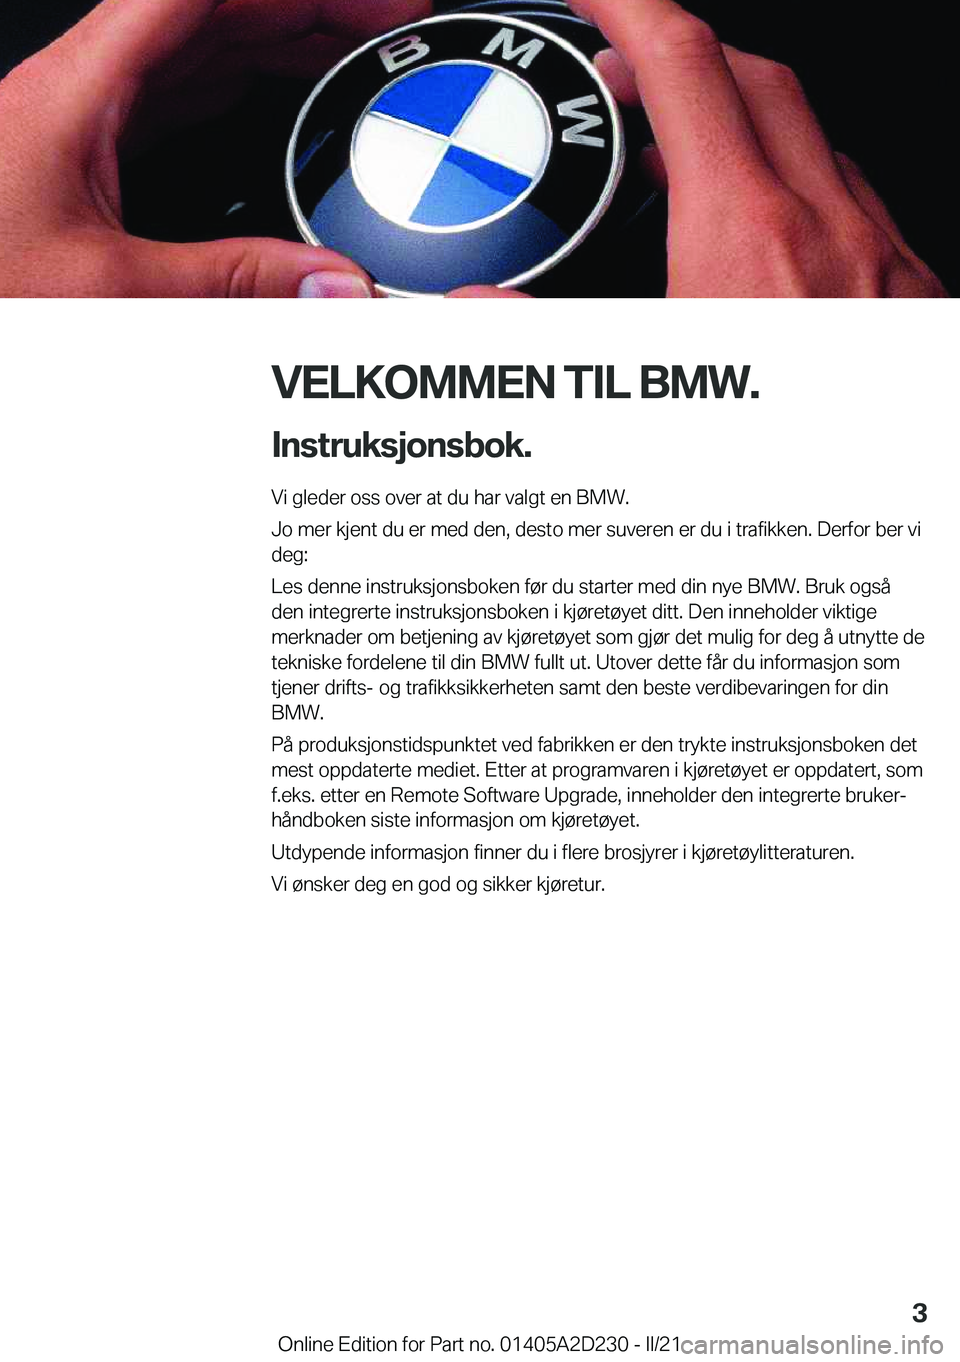 BMW X6 M 2021  InstruksjonsbØker (in Norwegian) �V�E�L�K�O�M�M�E�N��T�I�L��B�M�W�.�I�n�s�t�r�u�k�s�j�o�n�s�b�o�k�.
�V�i��g�l�e�d�e�r��o�s�s��o�v�e�r��a�t��d�u��h�a�r��v�a�l�g�t��e�n��B�M�W�.
�J�o��m�e�r��k�j�e�n�t��d�u��e�r��m�e�d�